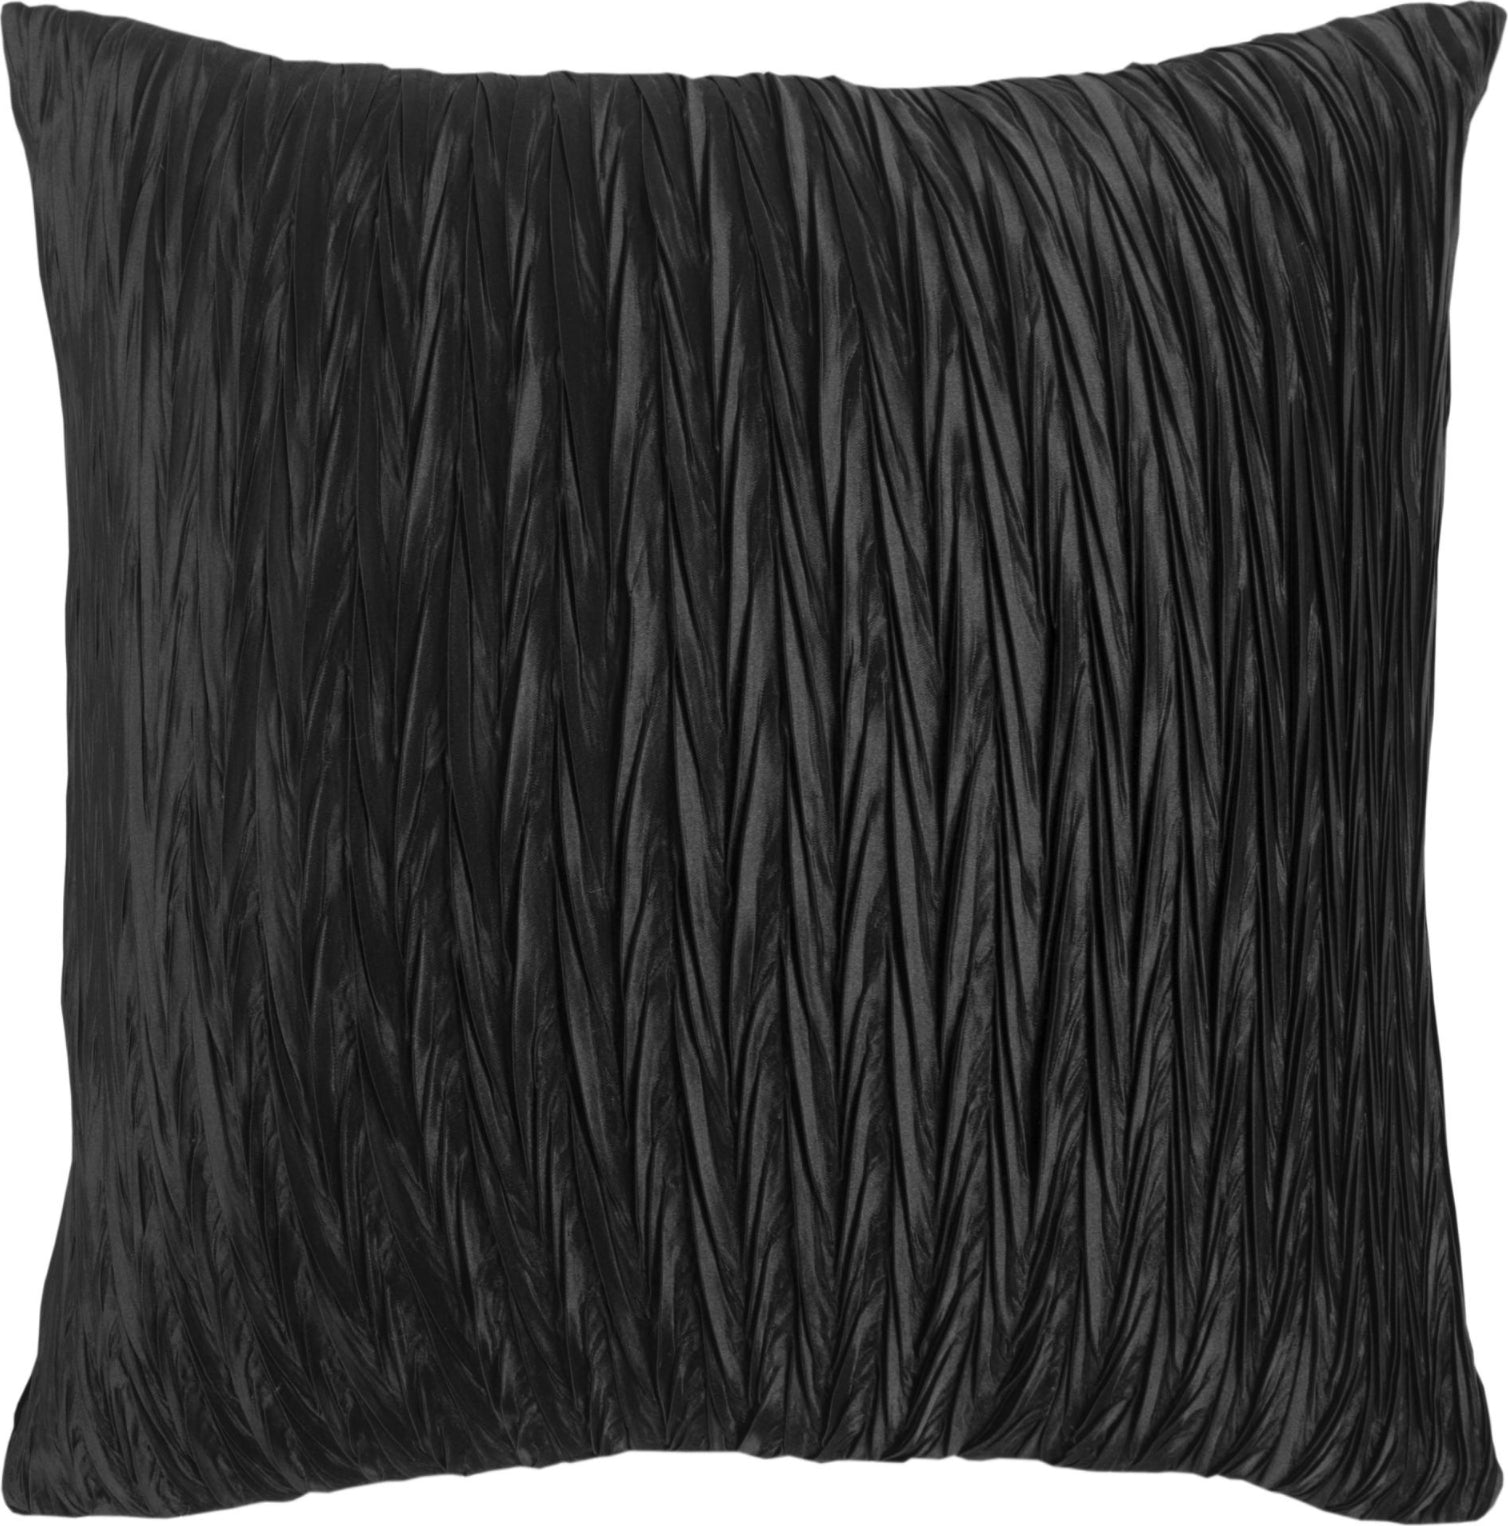 Rizzy Pillows T12996 Black